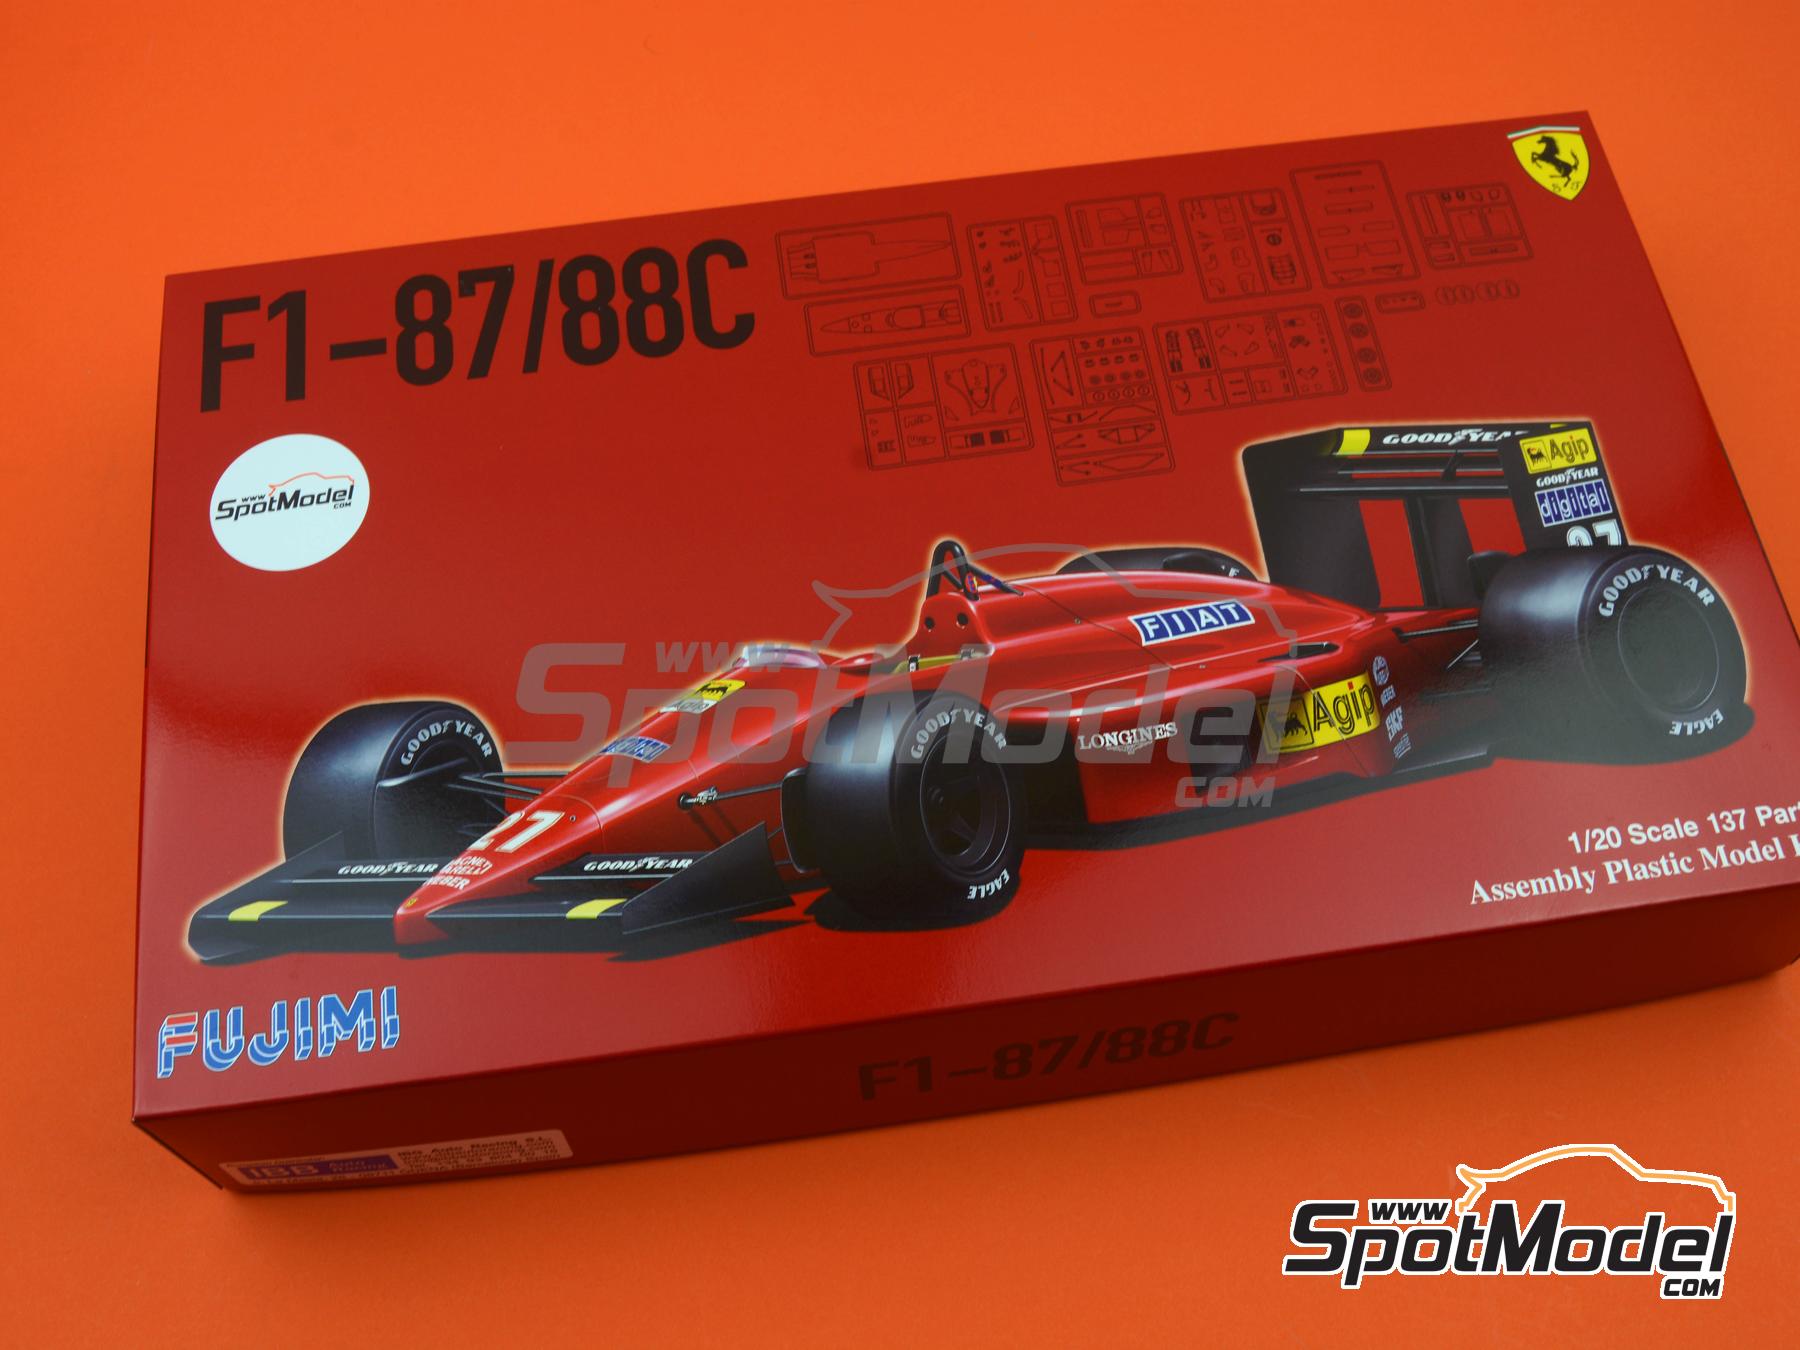 Fujimi model 1/20 Grand Prix series No.6 Ferrari F1-87 88C Model Car 